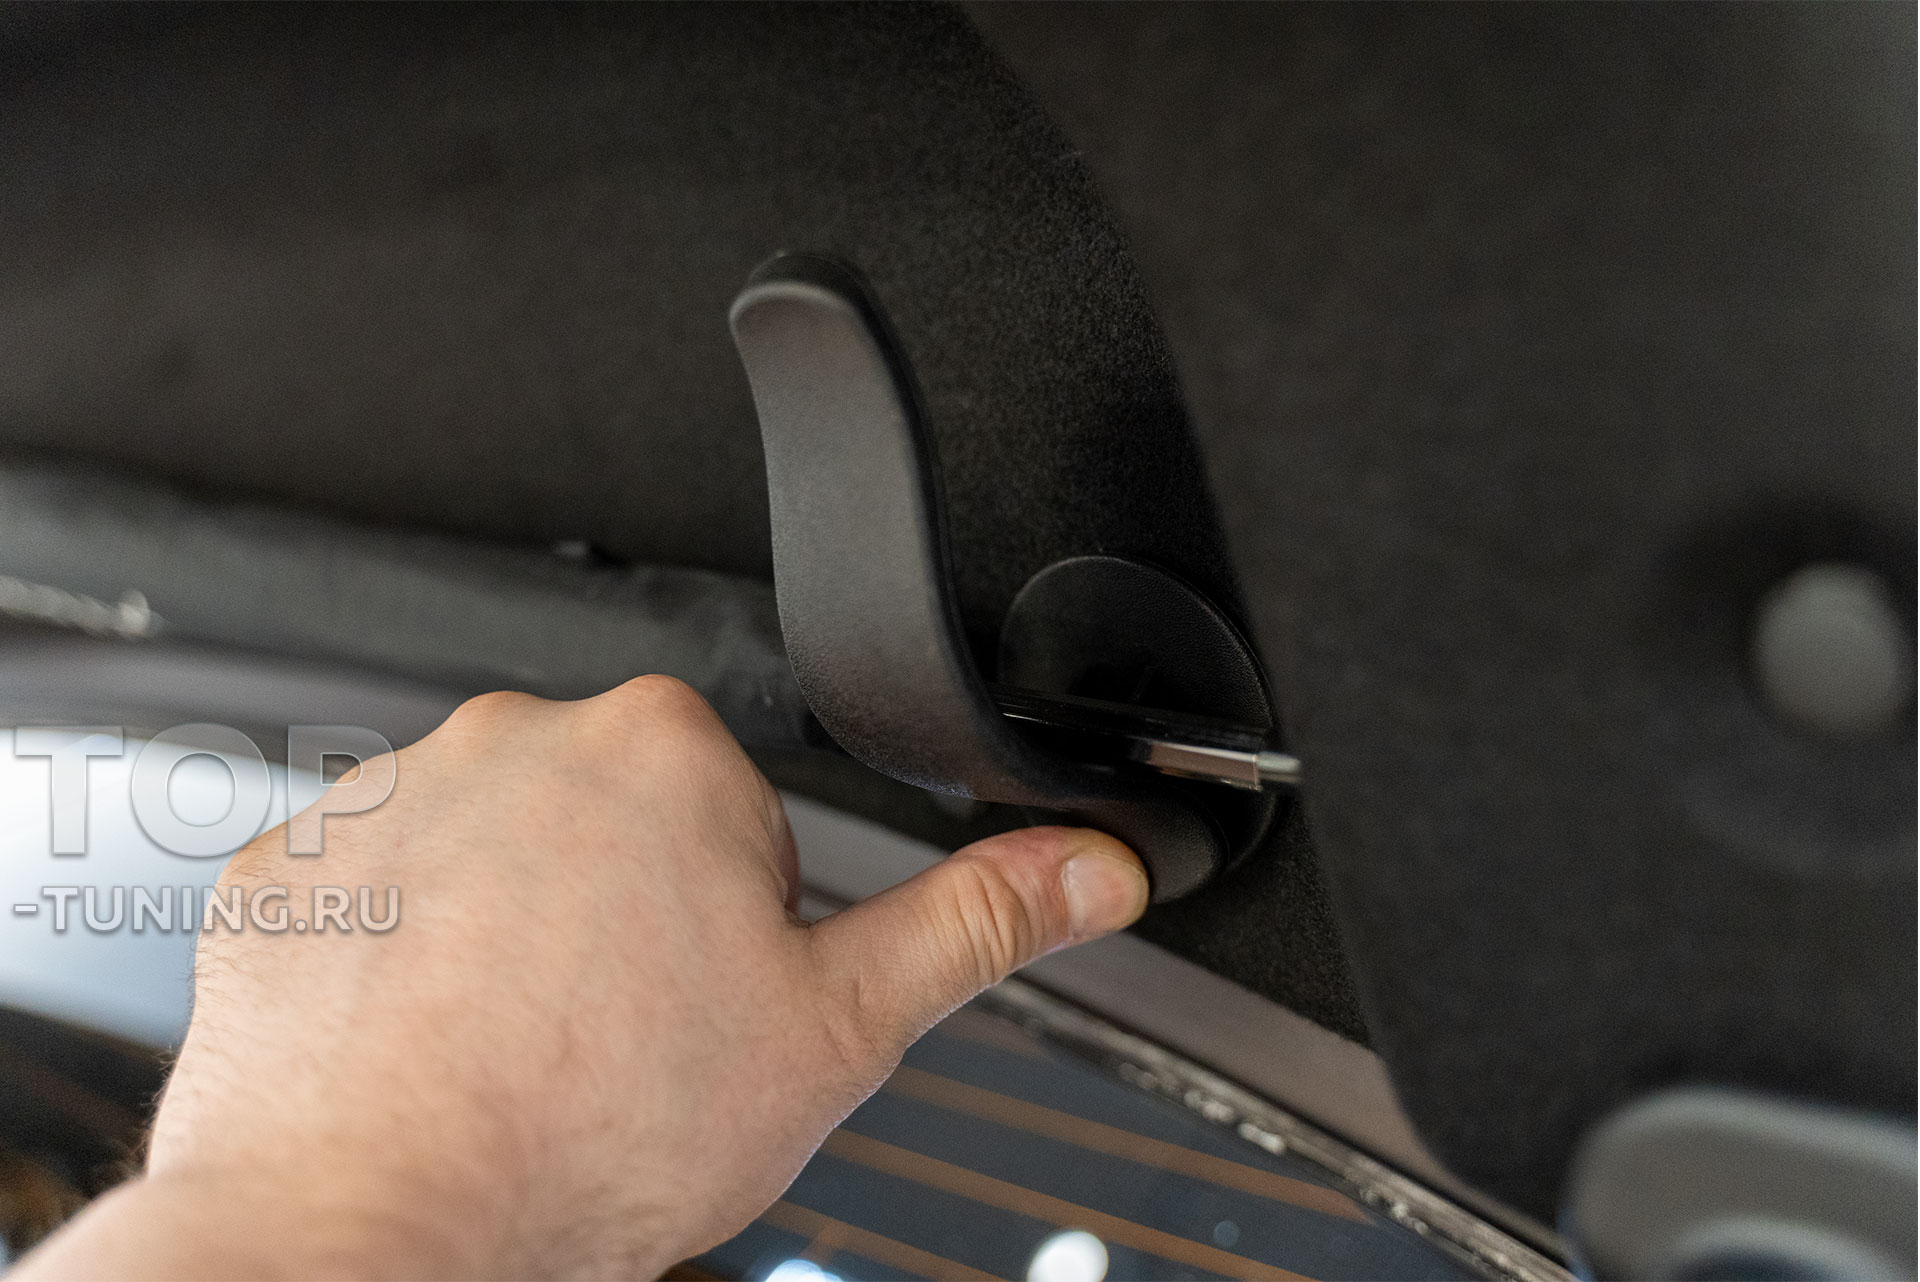 Установка держателя для зонта в багажник Kia Optima IV поколения